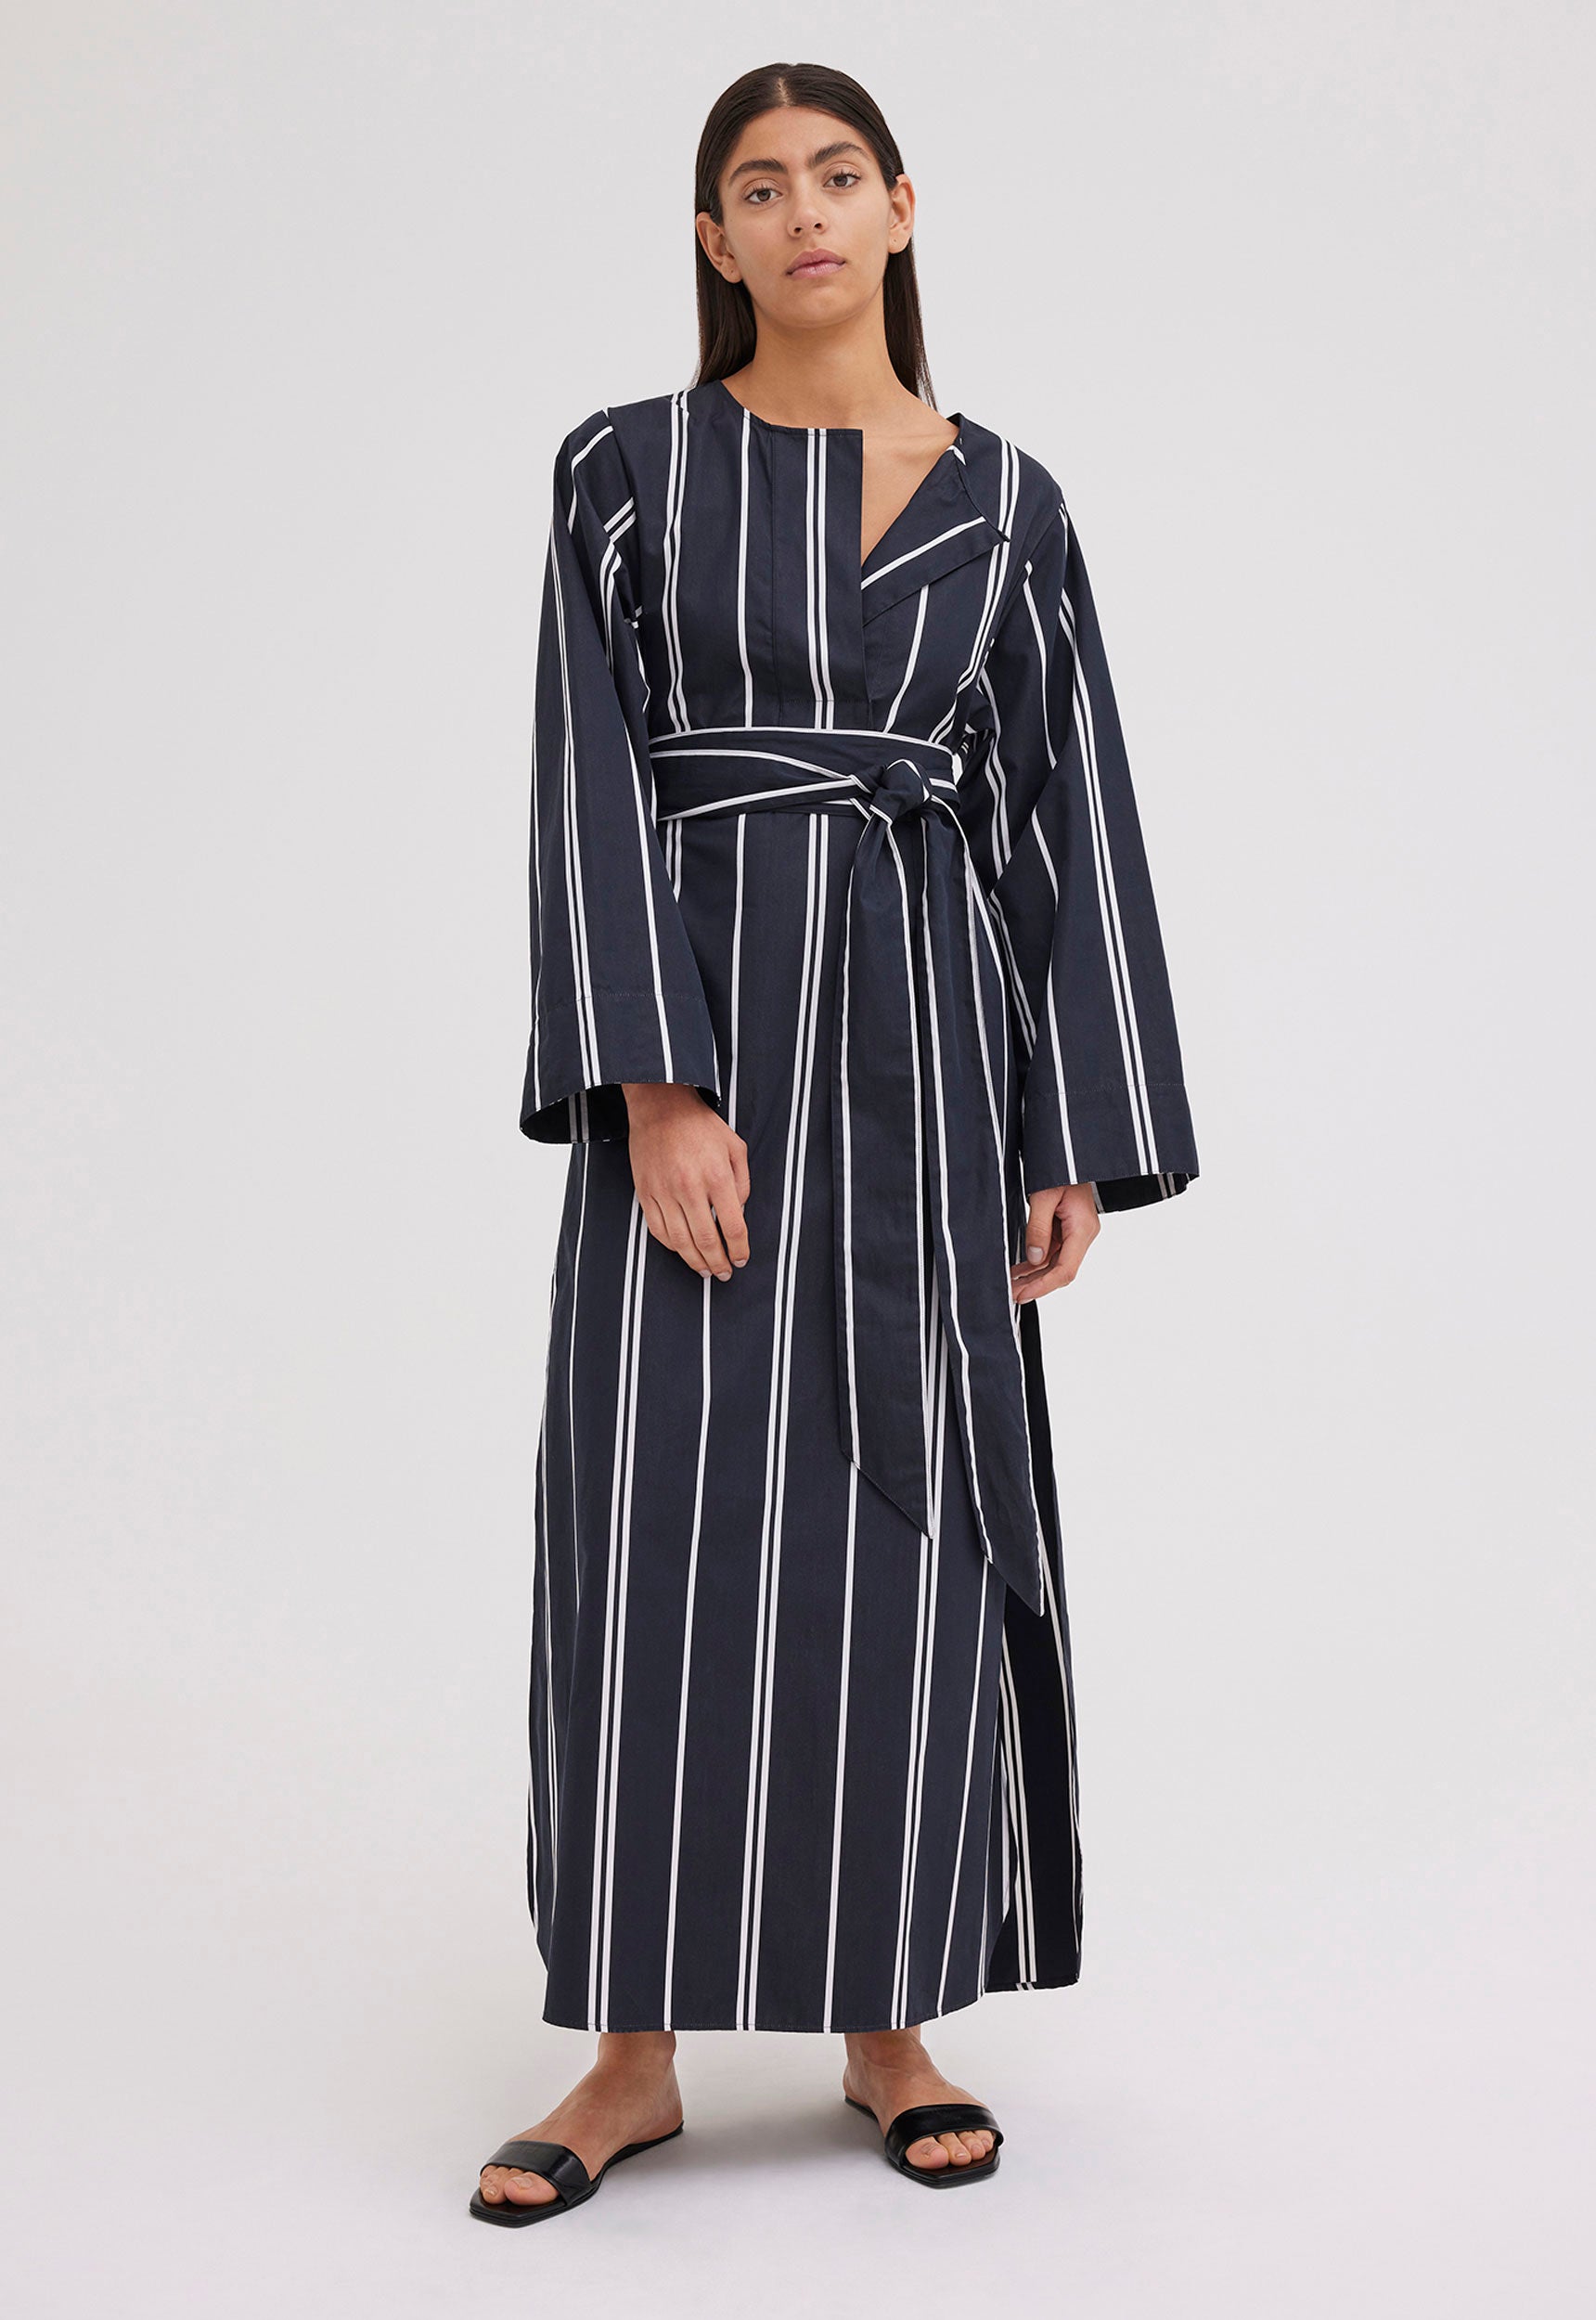 Granada Cotton Dress in Bold Stripe Black